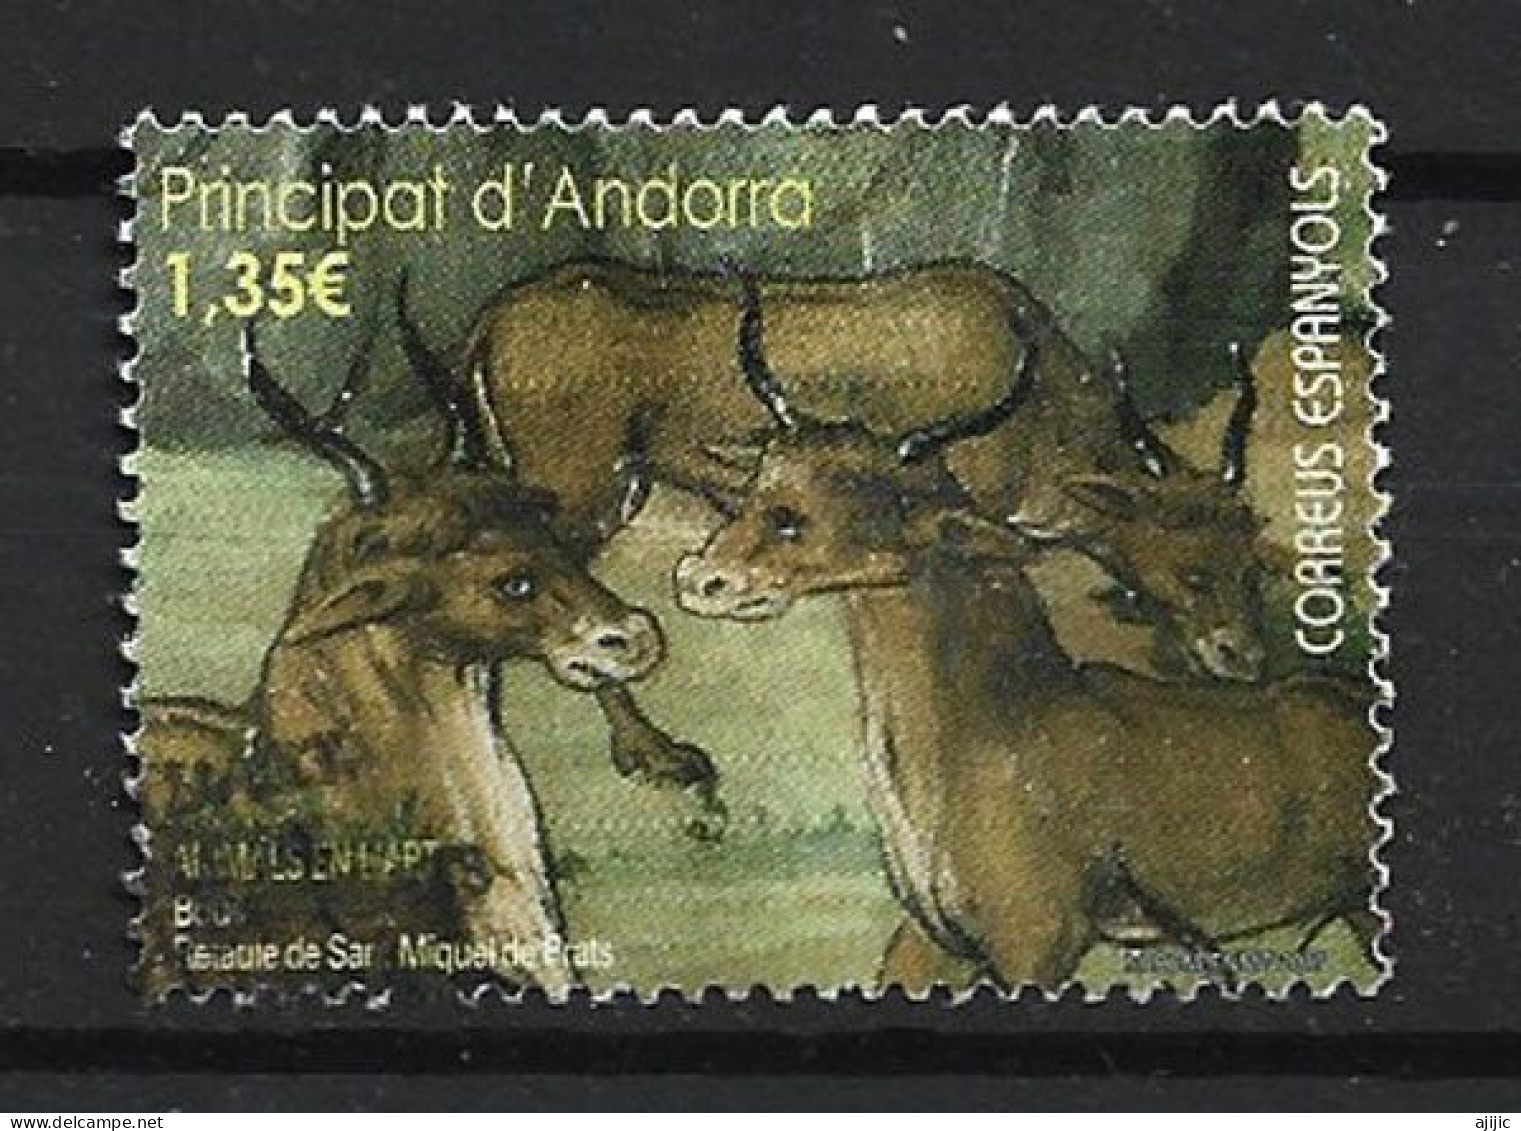 ANDORRE Bœufs En Peinture (animaux Dans L'art) Oblitéré 1 ère Qualité   (SP) - Used Stamps